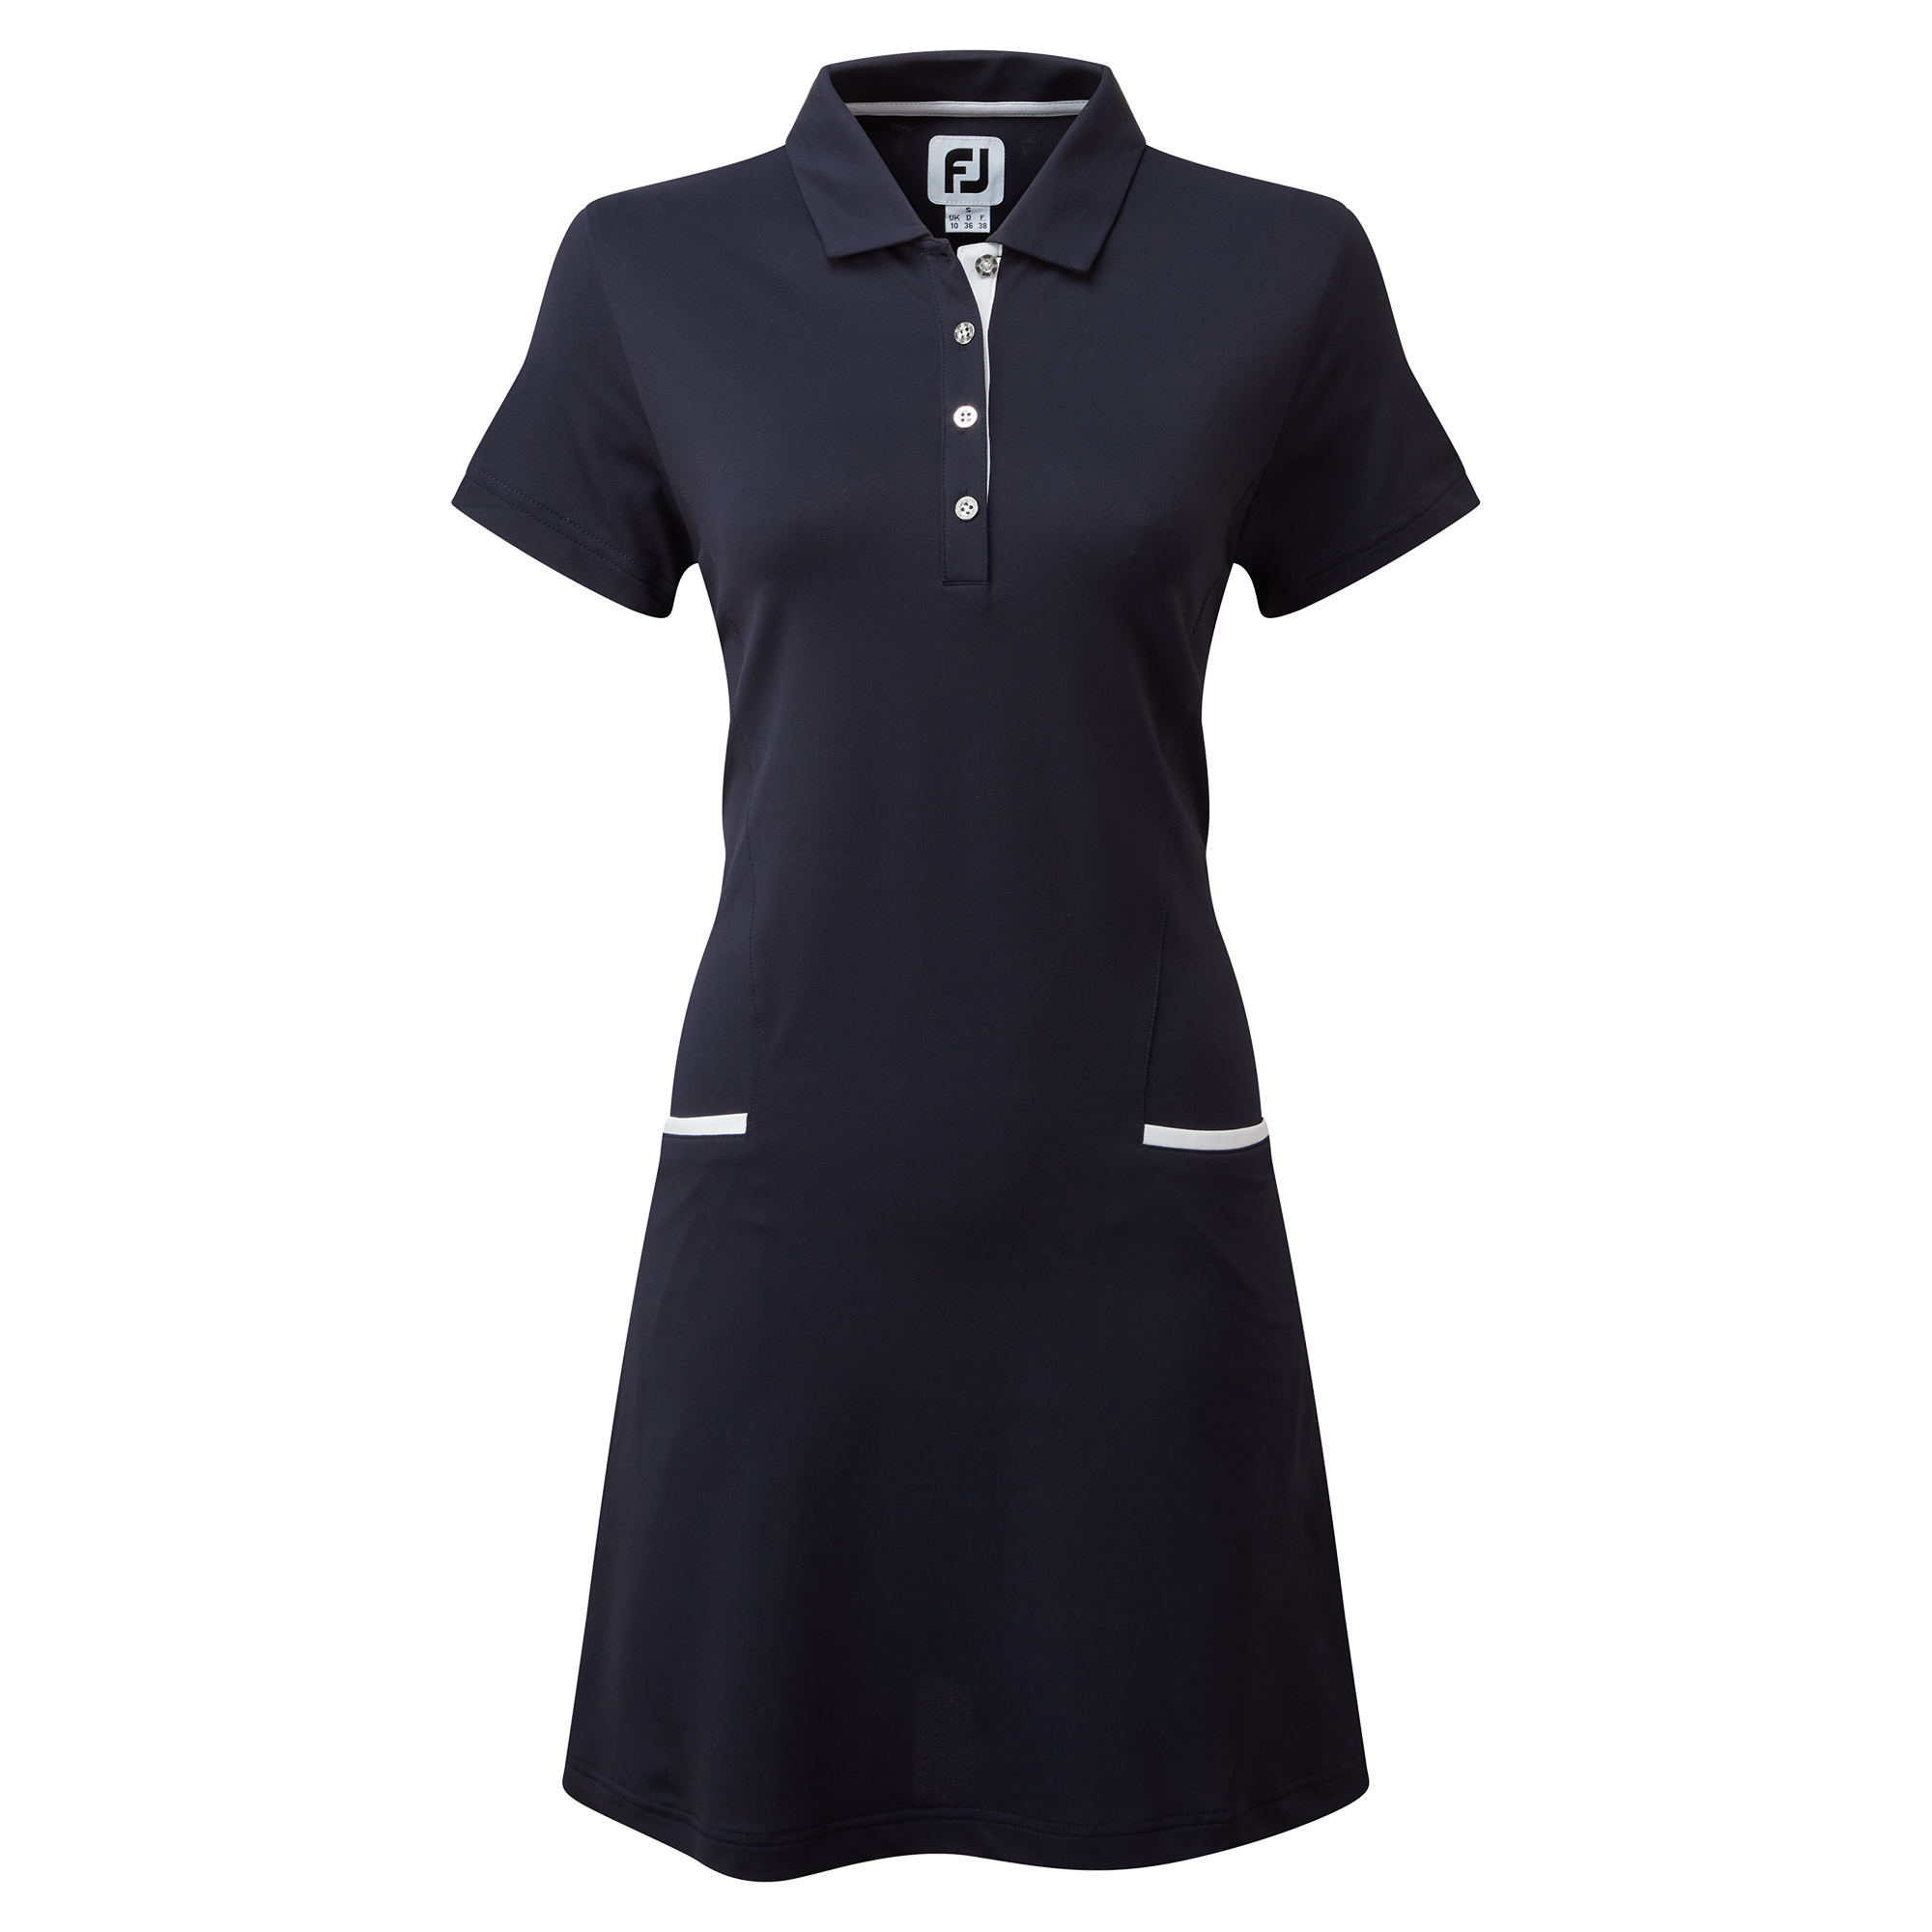 Footjoy dámské golfové šaty, tmavě modré